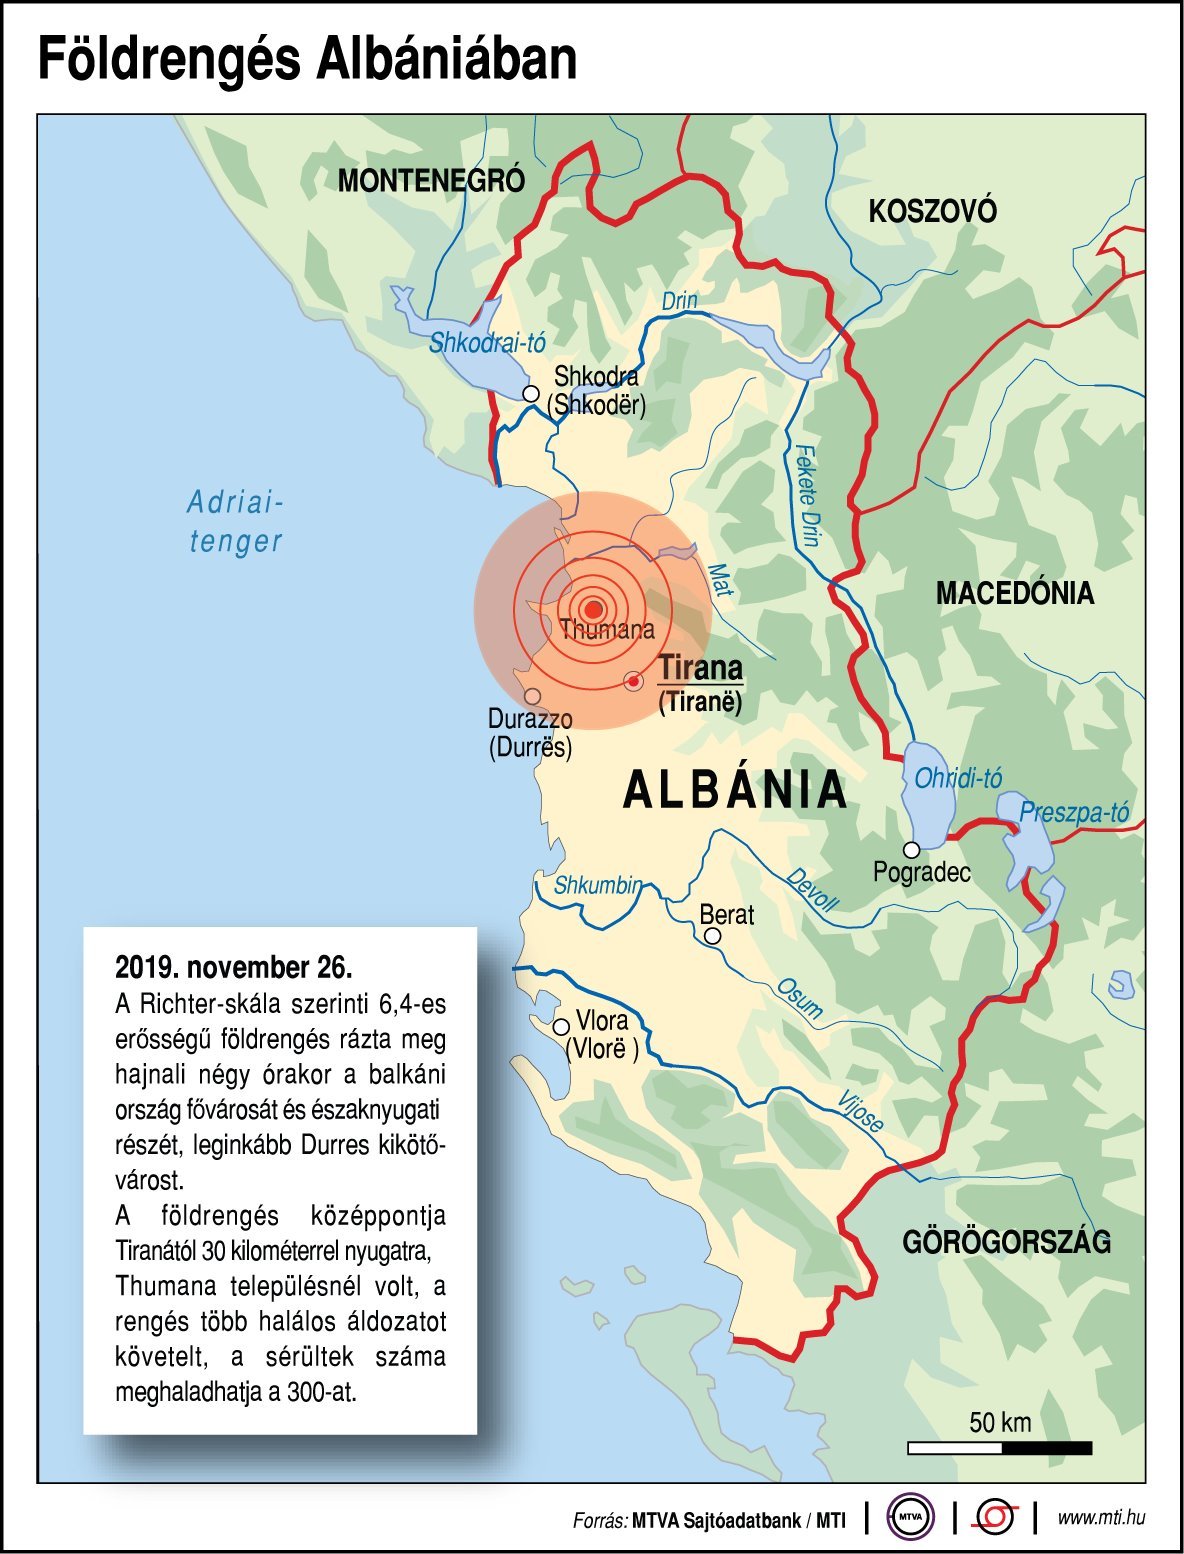 Többen meghaltak, drámai a helyzet a földrengés sújtotta Albániában